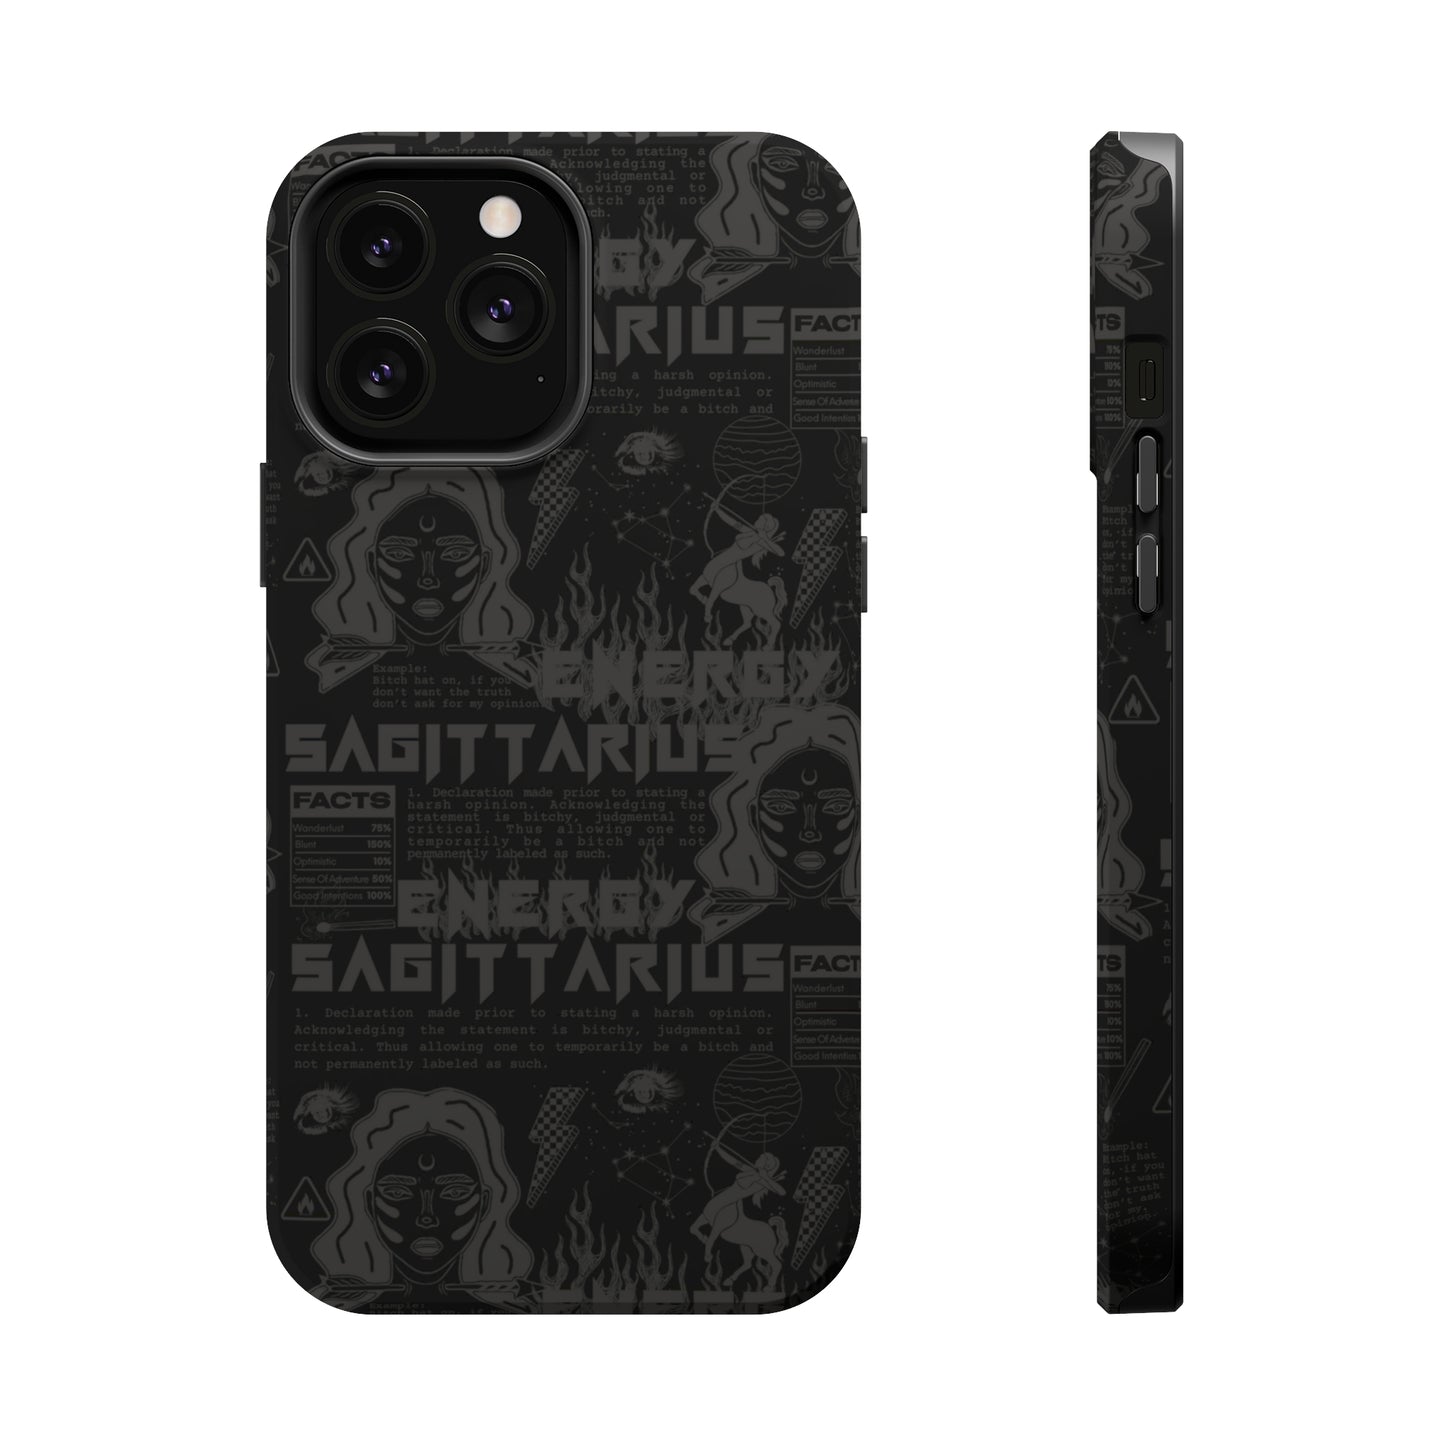 Sagittarius Blackout Phone Case